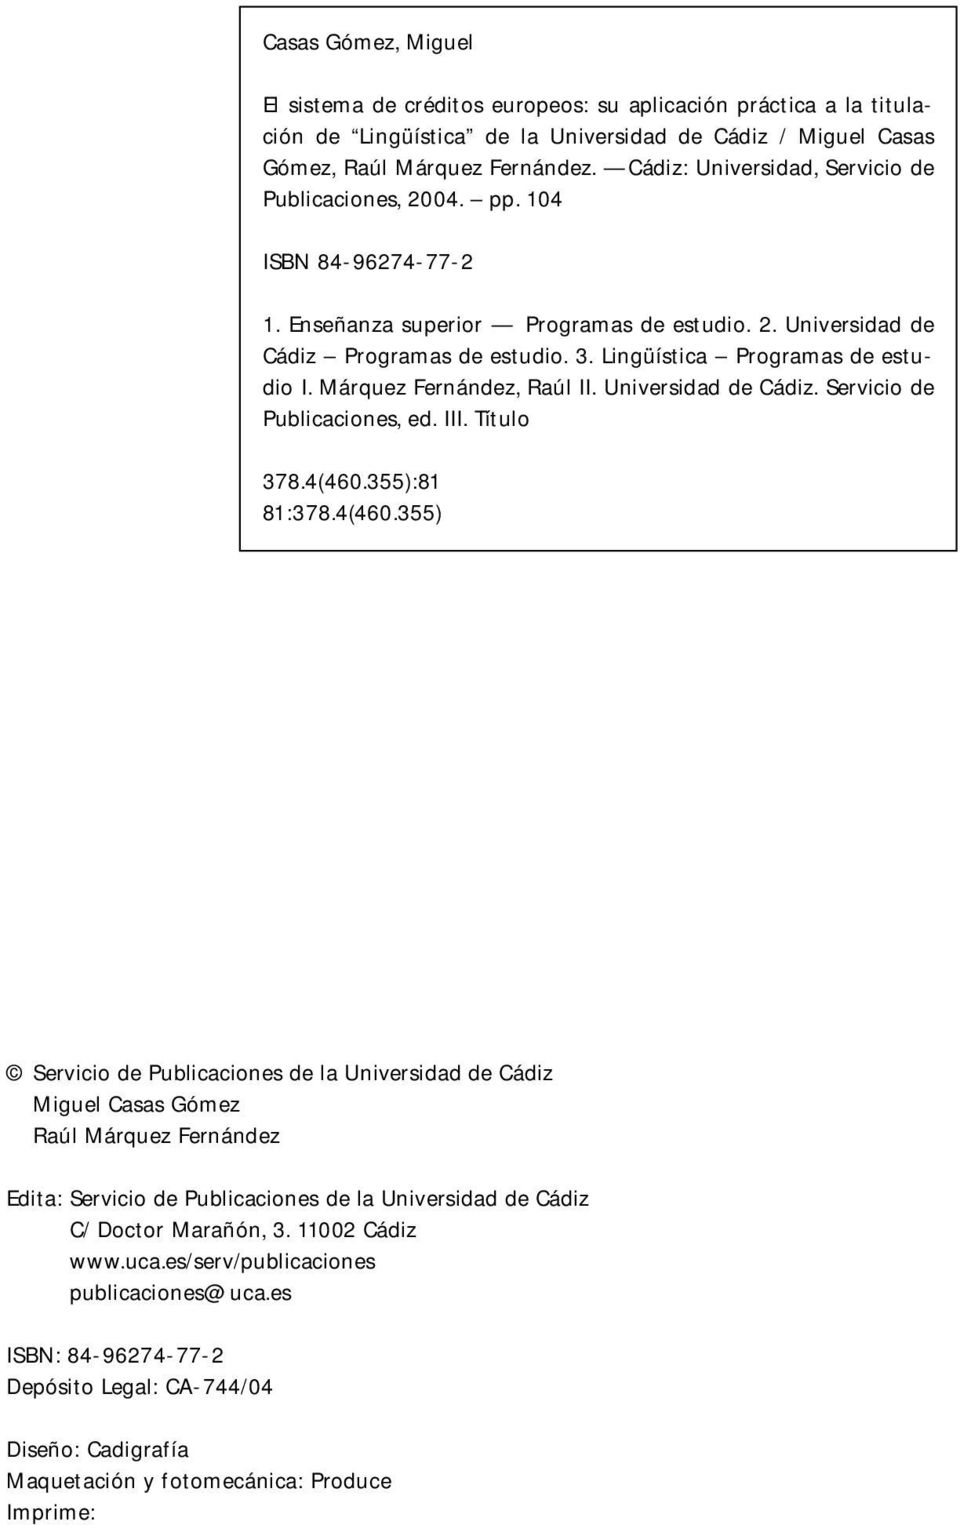 Lingüística Programas de estudio I. Márquez Fernández, Raúl II. Universidad de Cádiz. Servicio de Publicaciones, ed. III. Título 378.4(460.